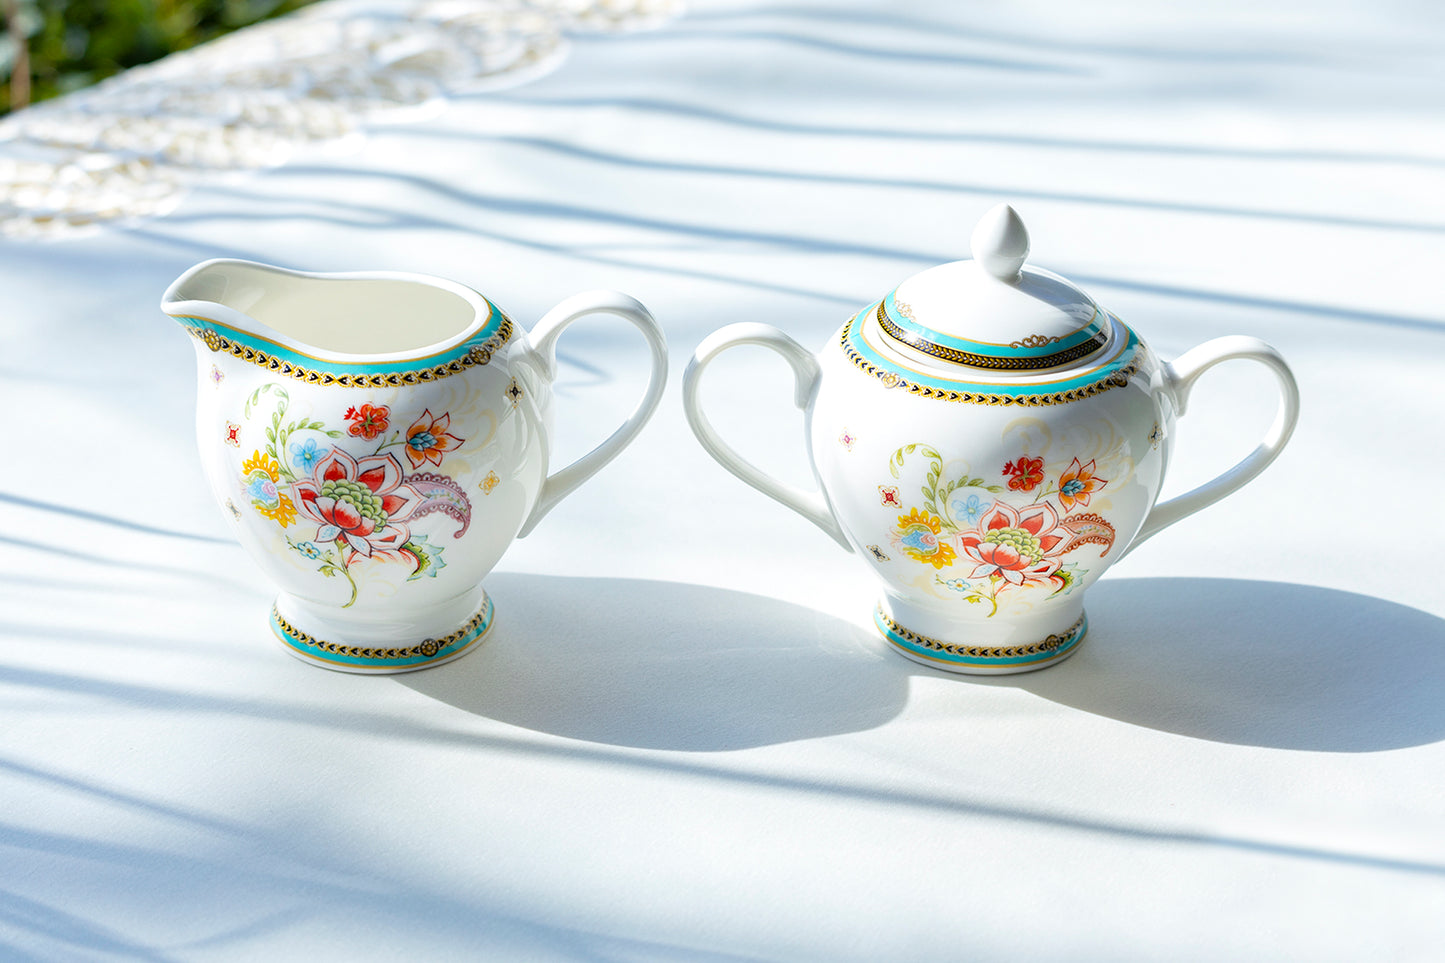 Emperor's Garden Fine Porcelain Sugar & Creamer Set